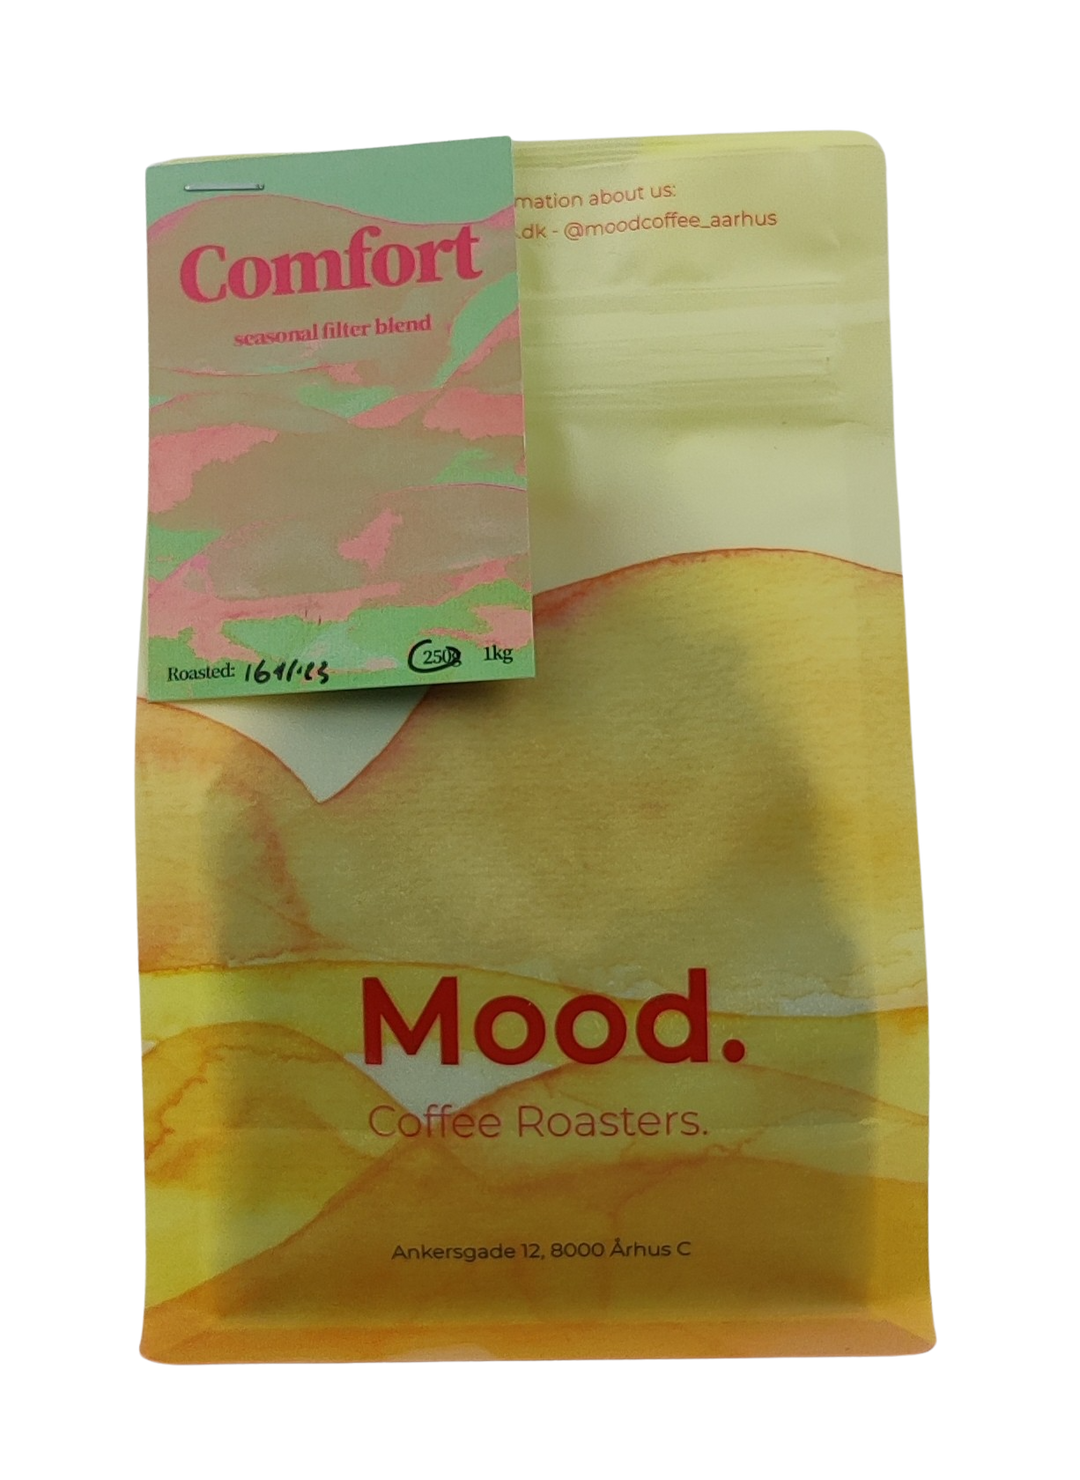 Mood Coffee Roasters Comfort - Seasonal Filter Blend 250g